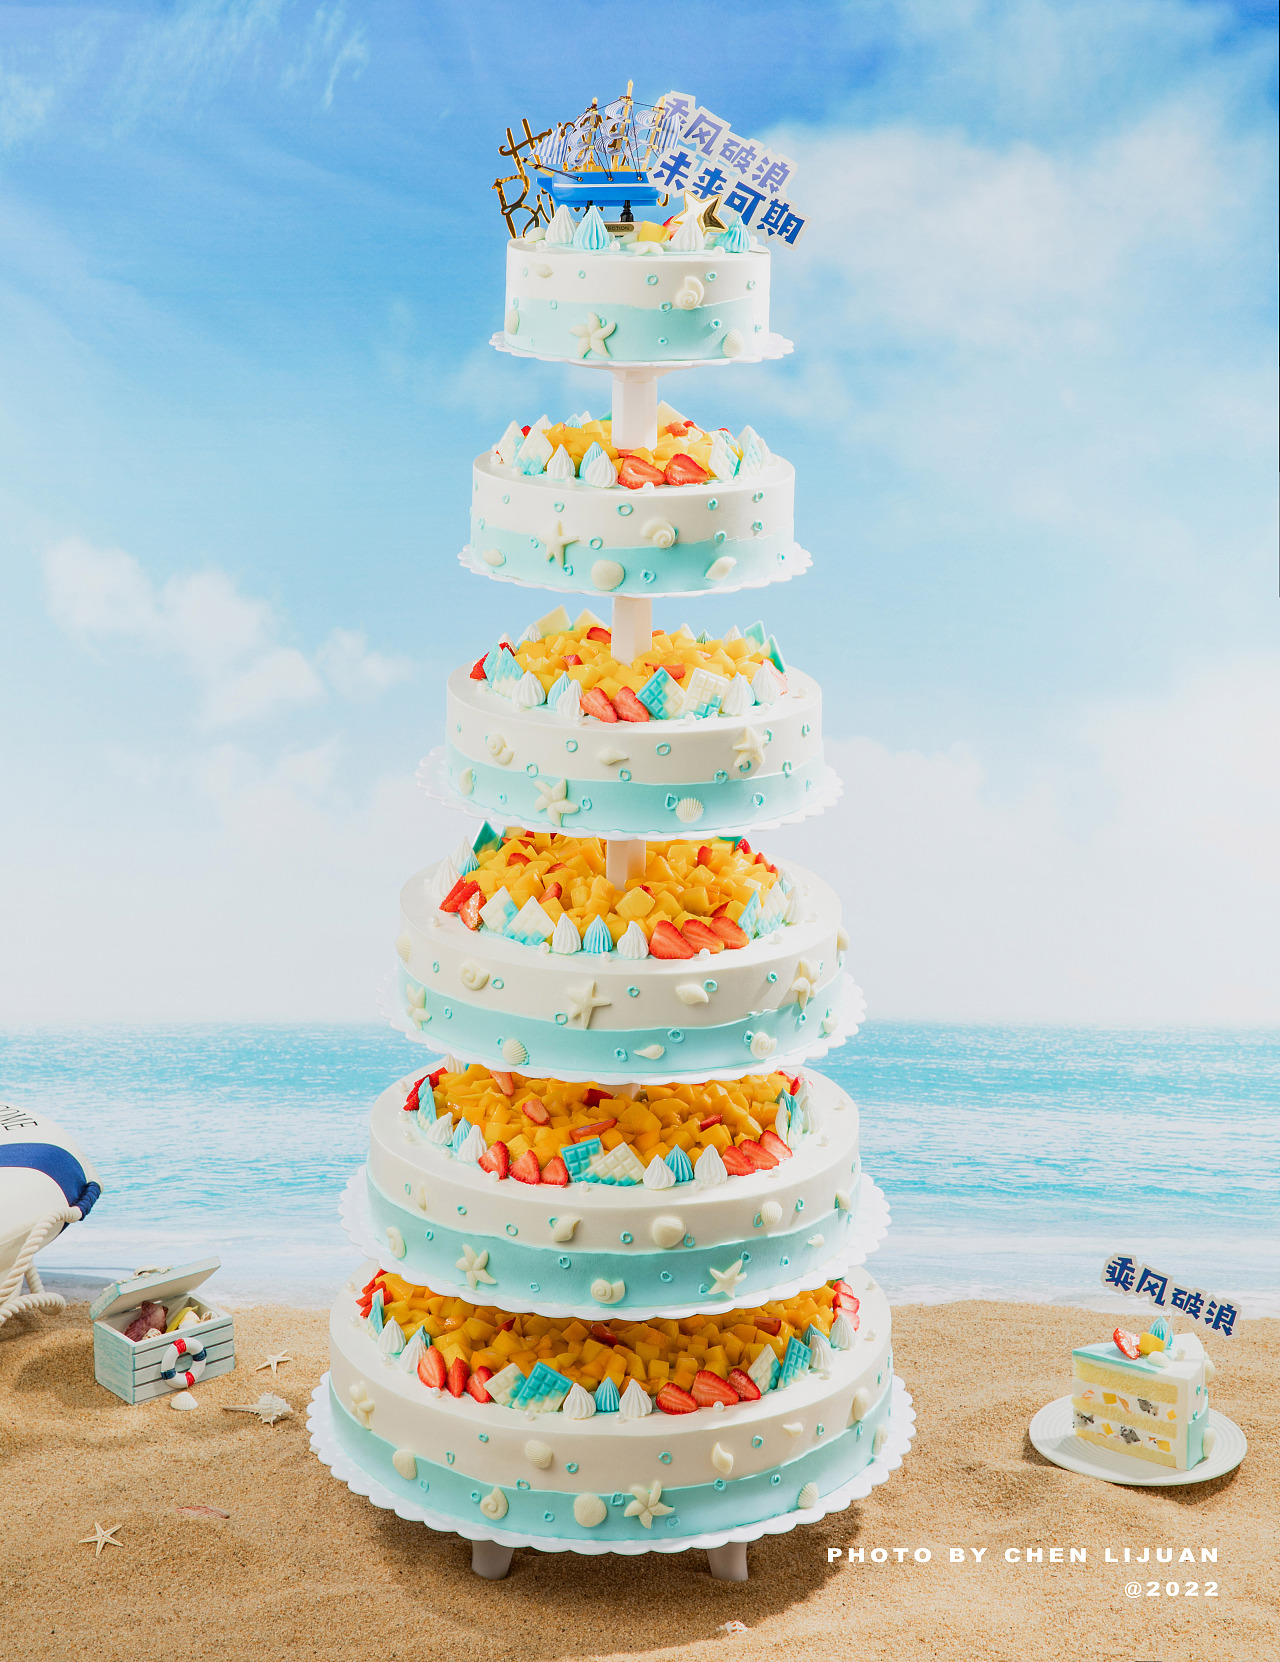 新款铁艺生日蛋糕架子 多层婚礼婚庆过寿蛋糕架子模型展示支架-阿里巴巴